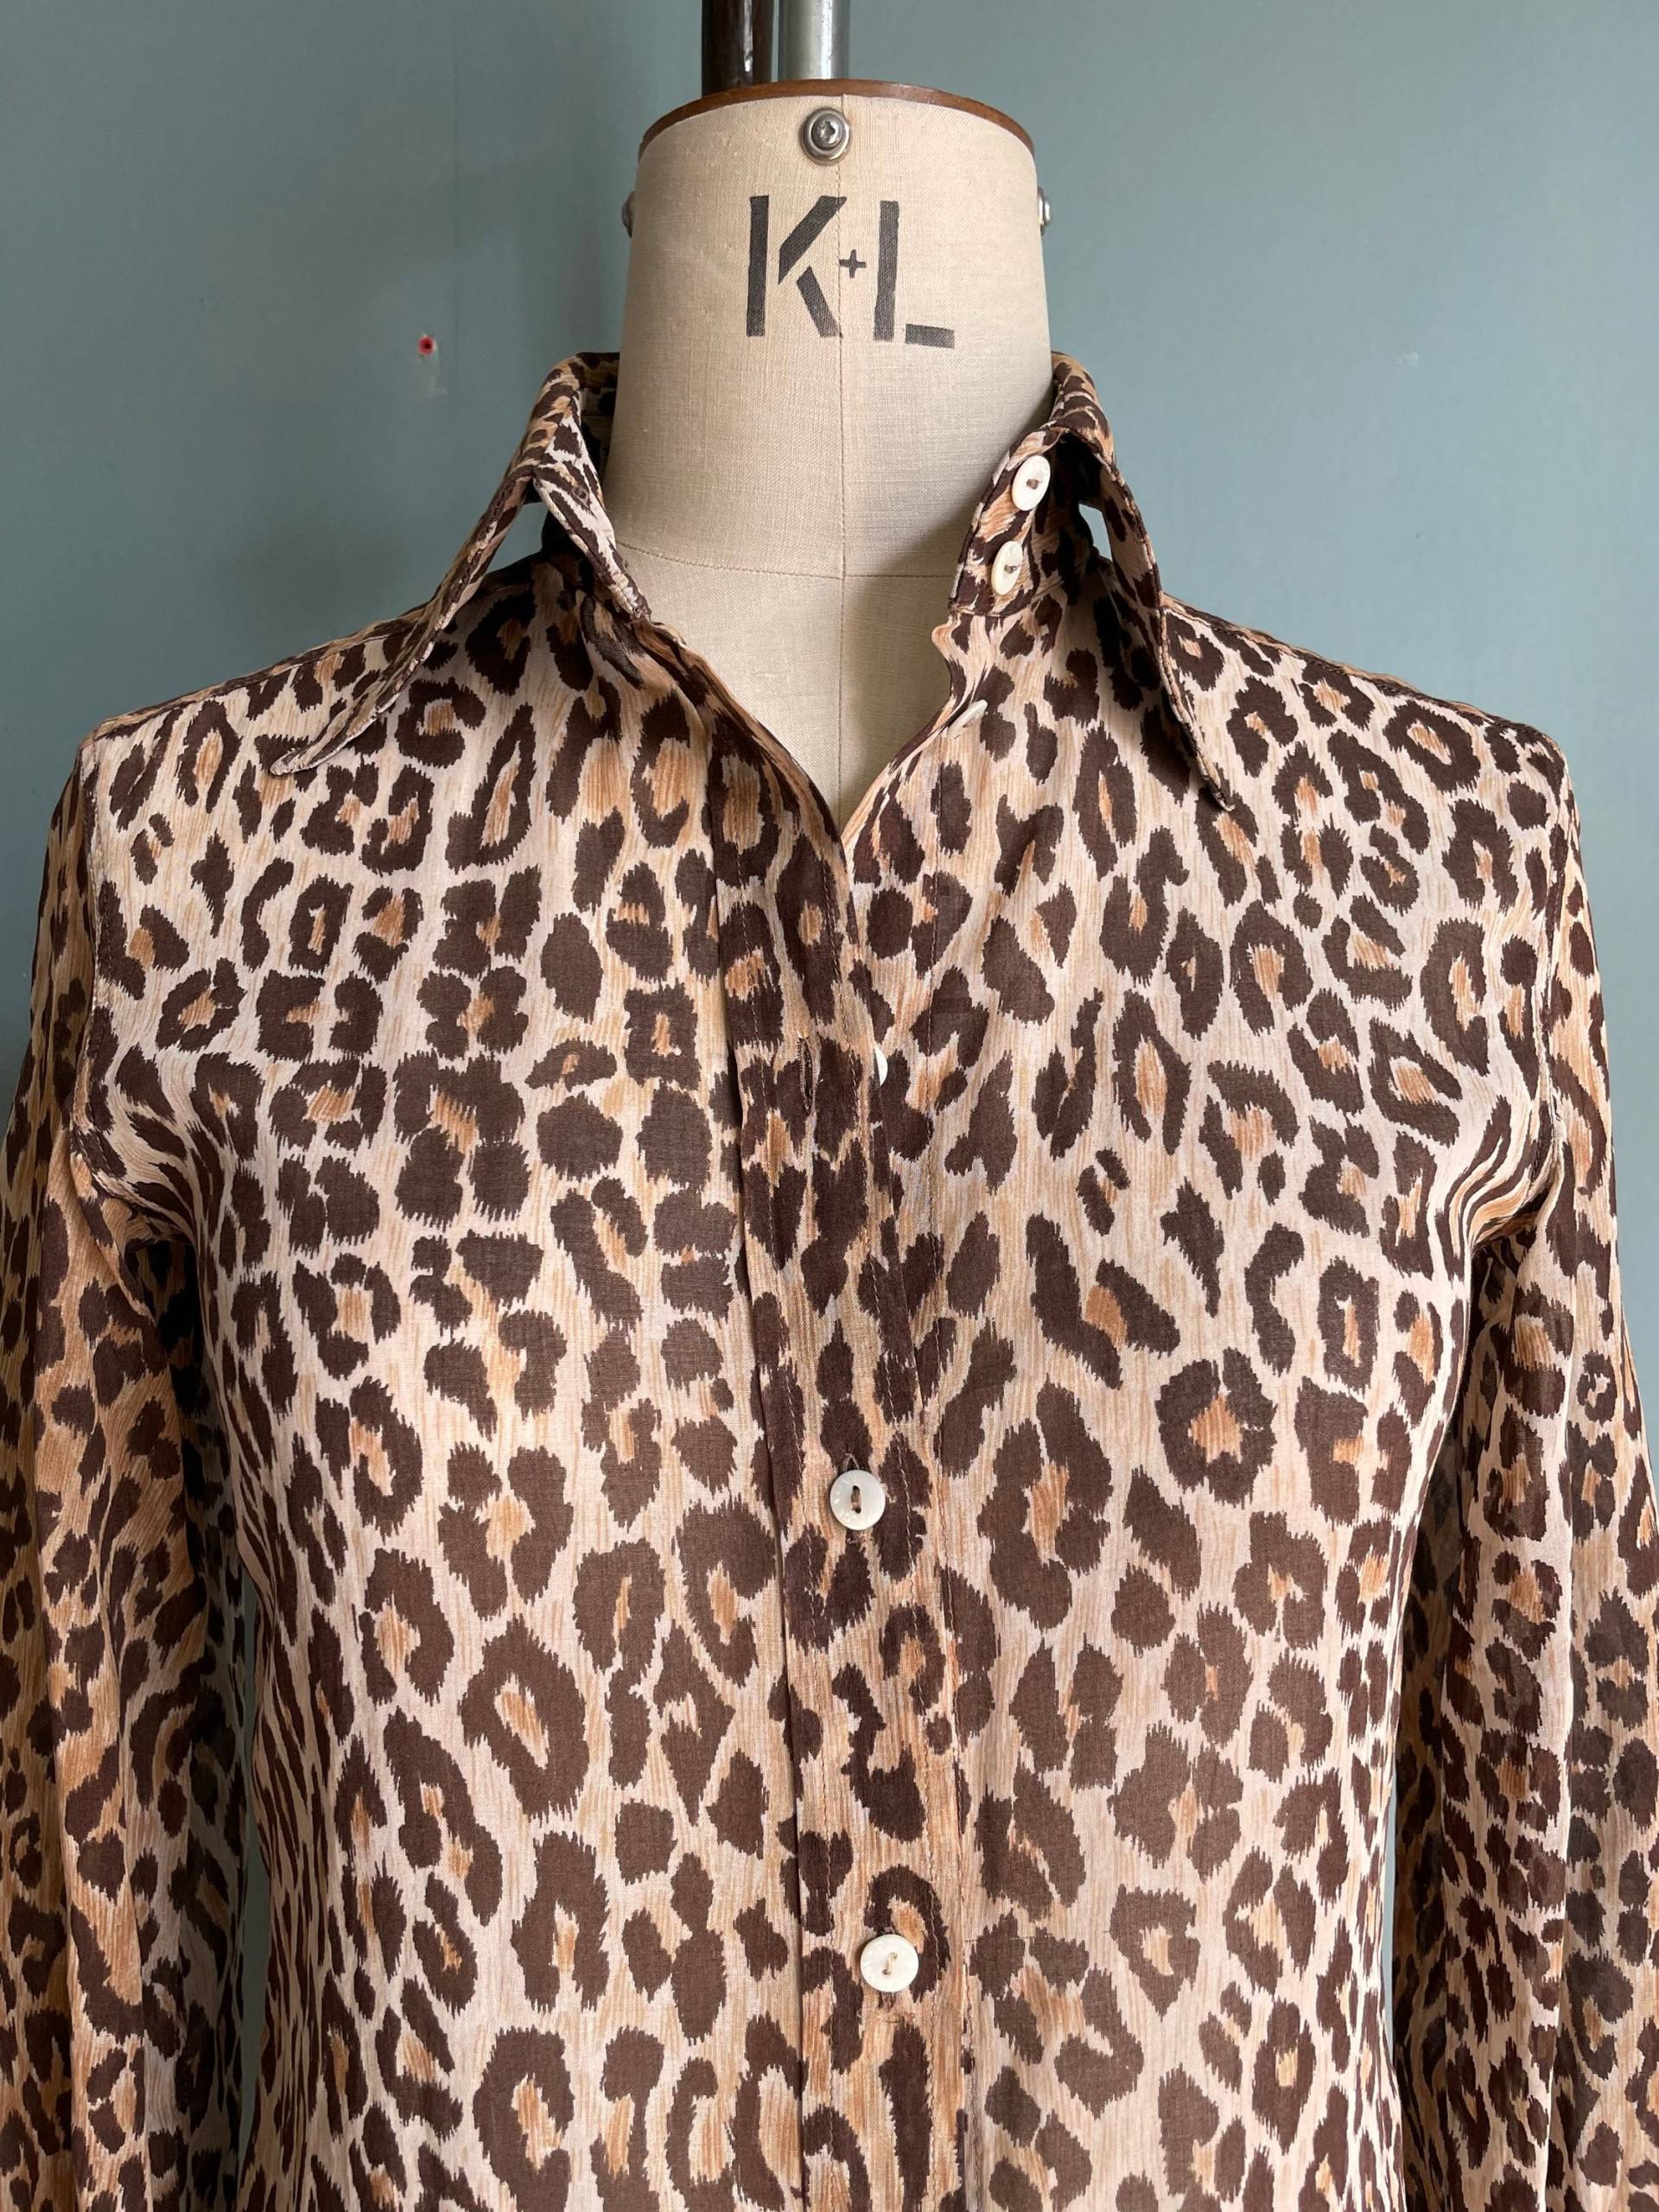 Dolce&gabbana Shirtkleid Signature Leoparden Print Baumwolle in Exzellenten Zustand Gr. 42 It von flkvintageshop